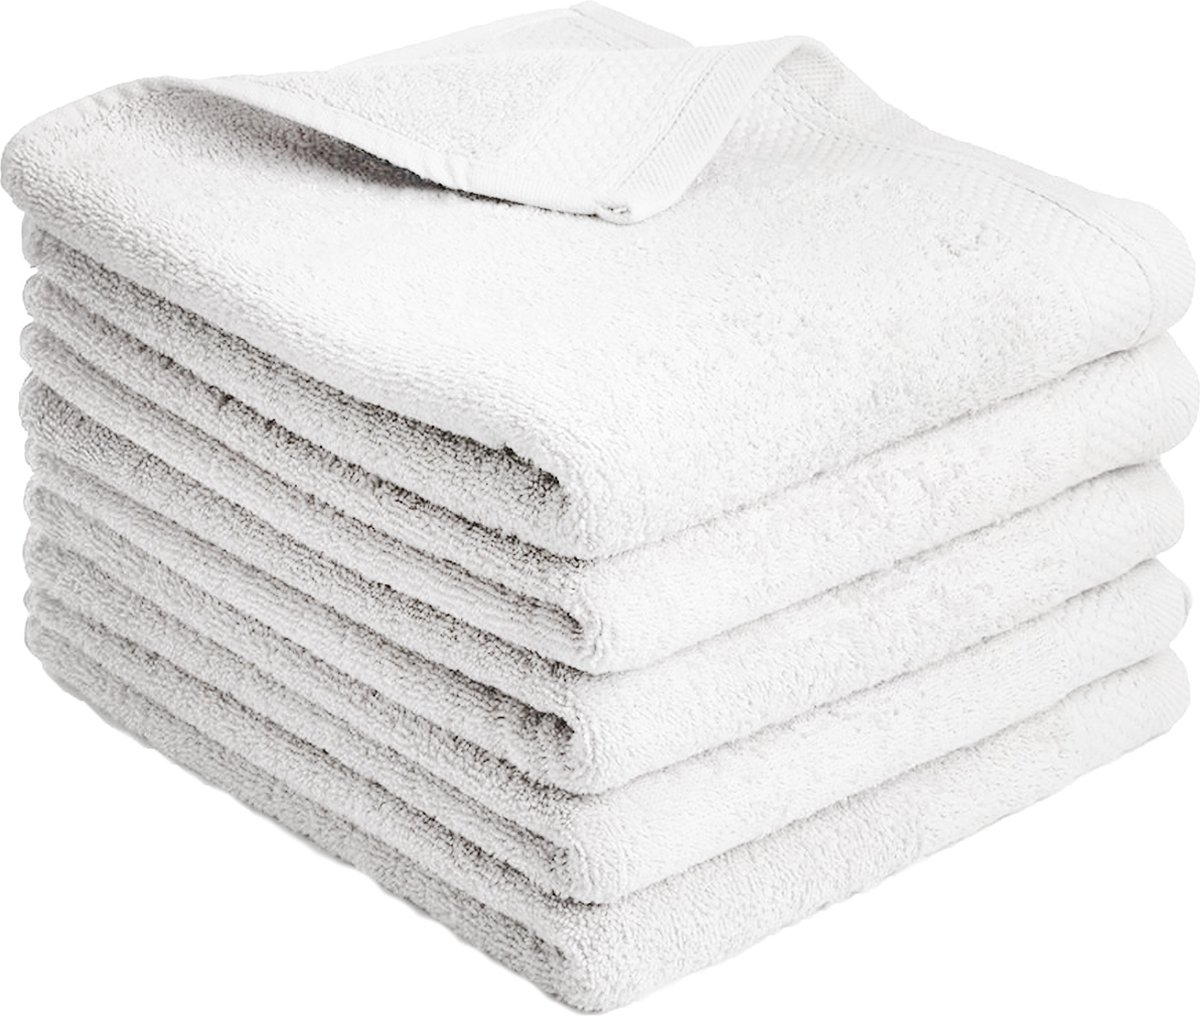 Handdoeken Katoen - Litalente - Hotel Handdoek - 60x110 cm - 550g/m² - Wit - N.B. Zachte handdoeken 100% katoen - 5-delig - badhanddoeken 110 x 60 cm